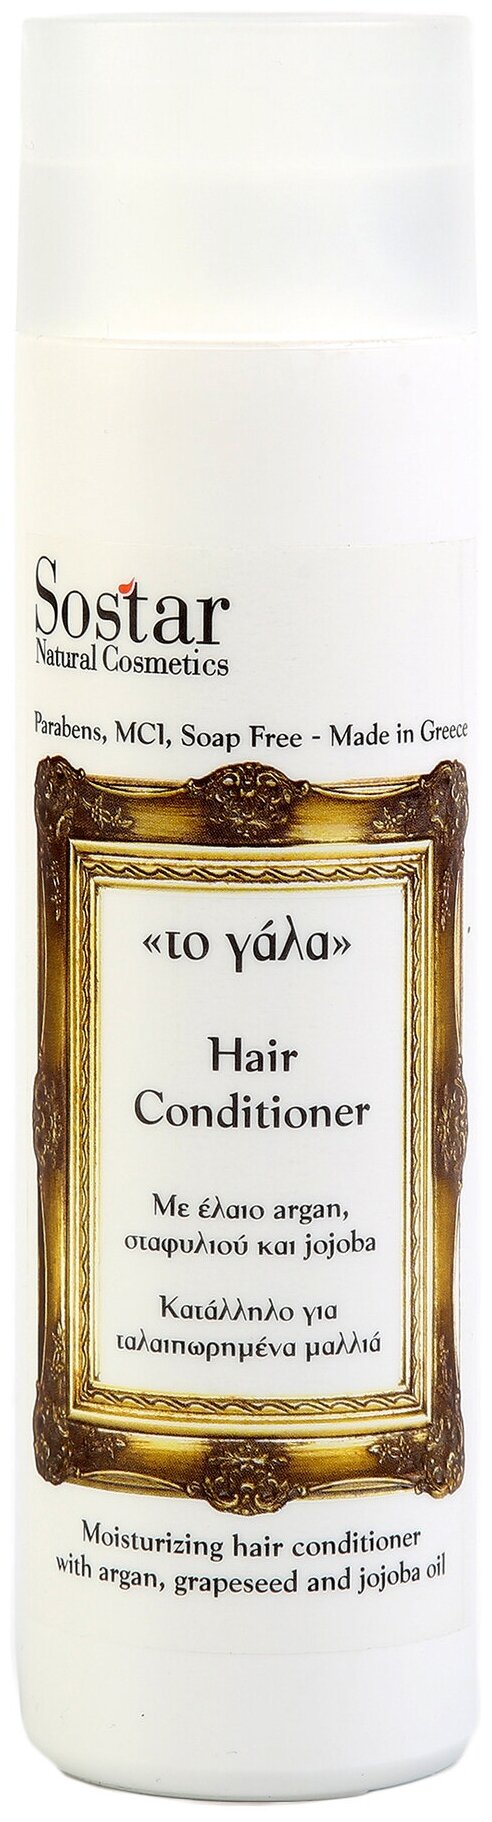 Sostar кондиционер Natural Cosmetics Увлажняющий для всех типов волос с молоком ослицы, 250 мл